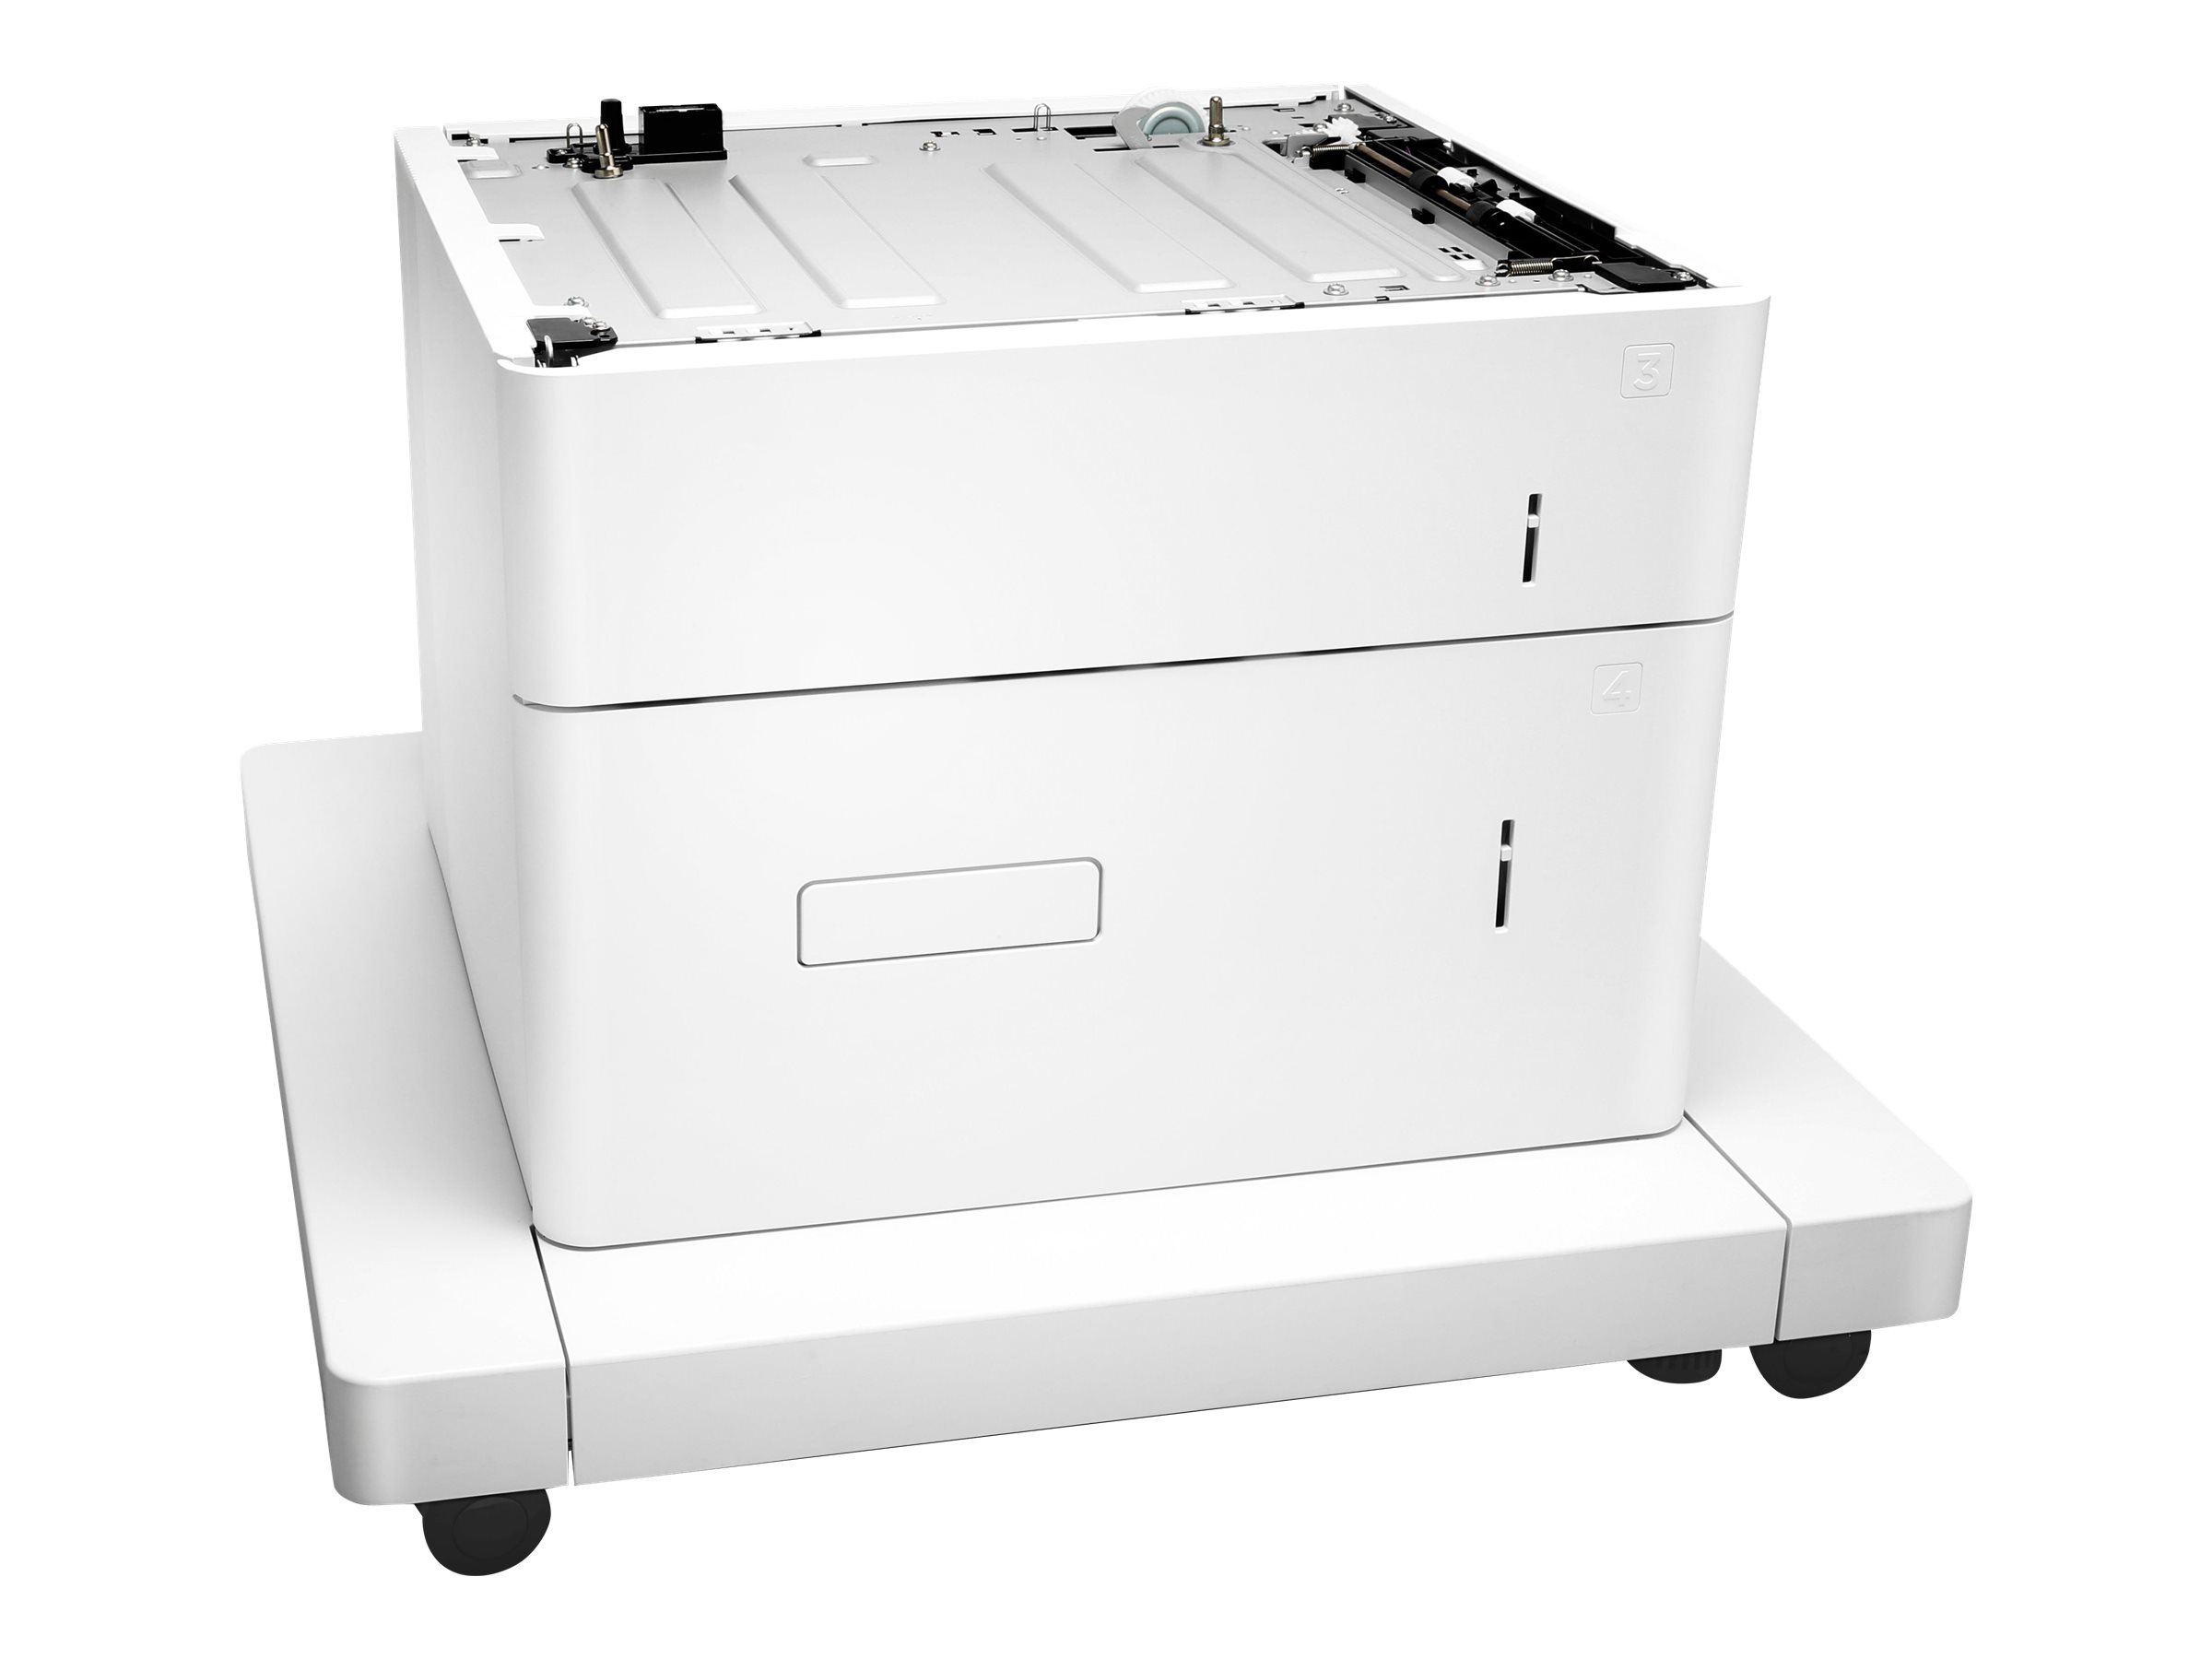 HP Paper Feeder and Stand - Base d'imprimante avec tiroir d'alimentation pour support d'impression - 2550 feuilles dans 2 bac(s) - pour LaserJet Enterprise MFP M634; LaserJet Enterprise Flow MFP M634, MFP M635, MFP M636 - J8J92A - Accessoires pour imprimante